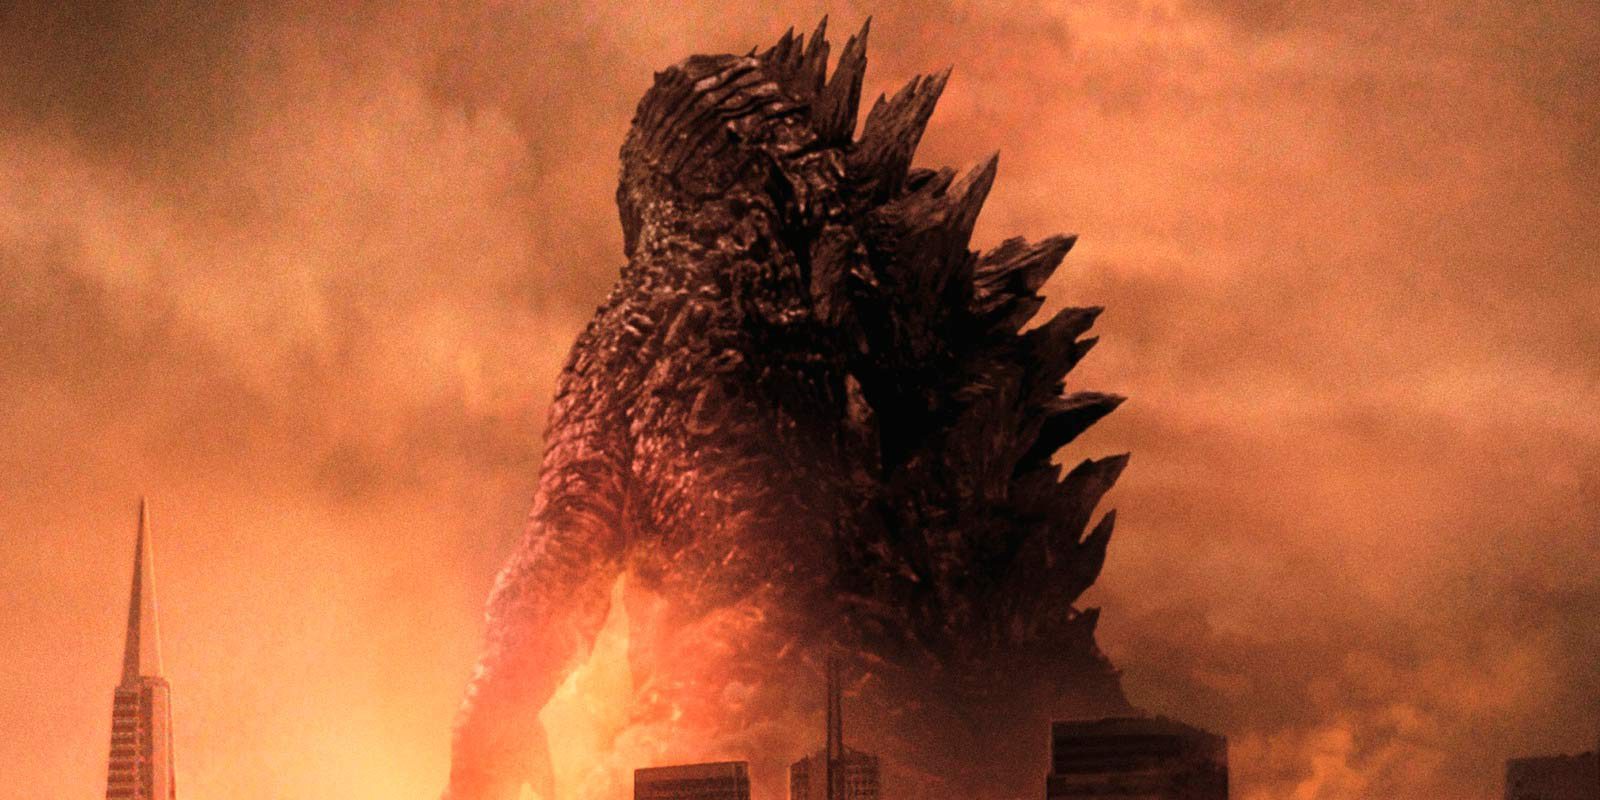 Desvelada la sinopsis de 'Godzilla: King of Monsters'